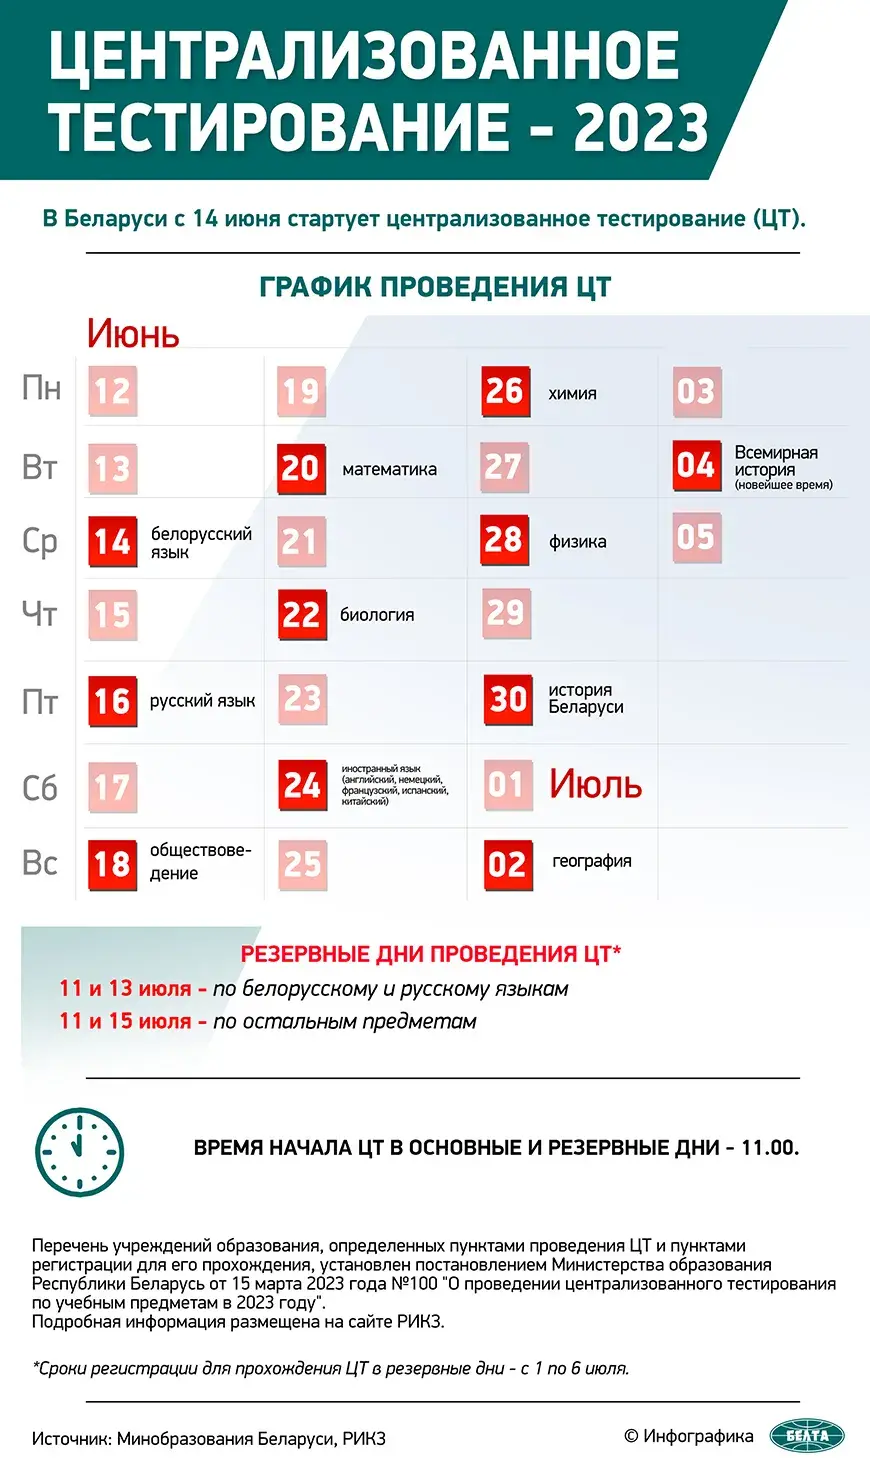 В Беларуси стартует ЦТ, первый экзамен — по белорусскому языку 